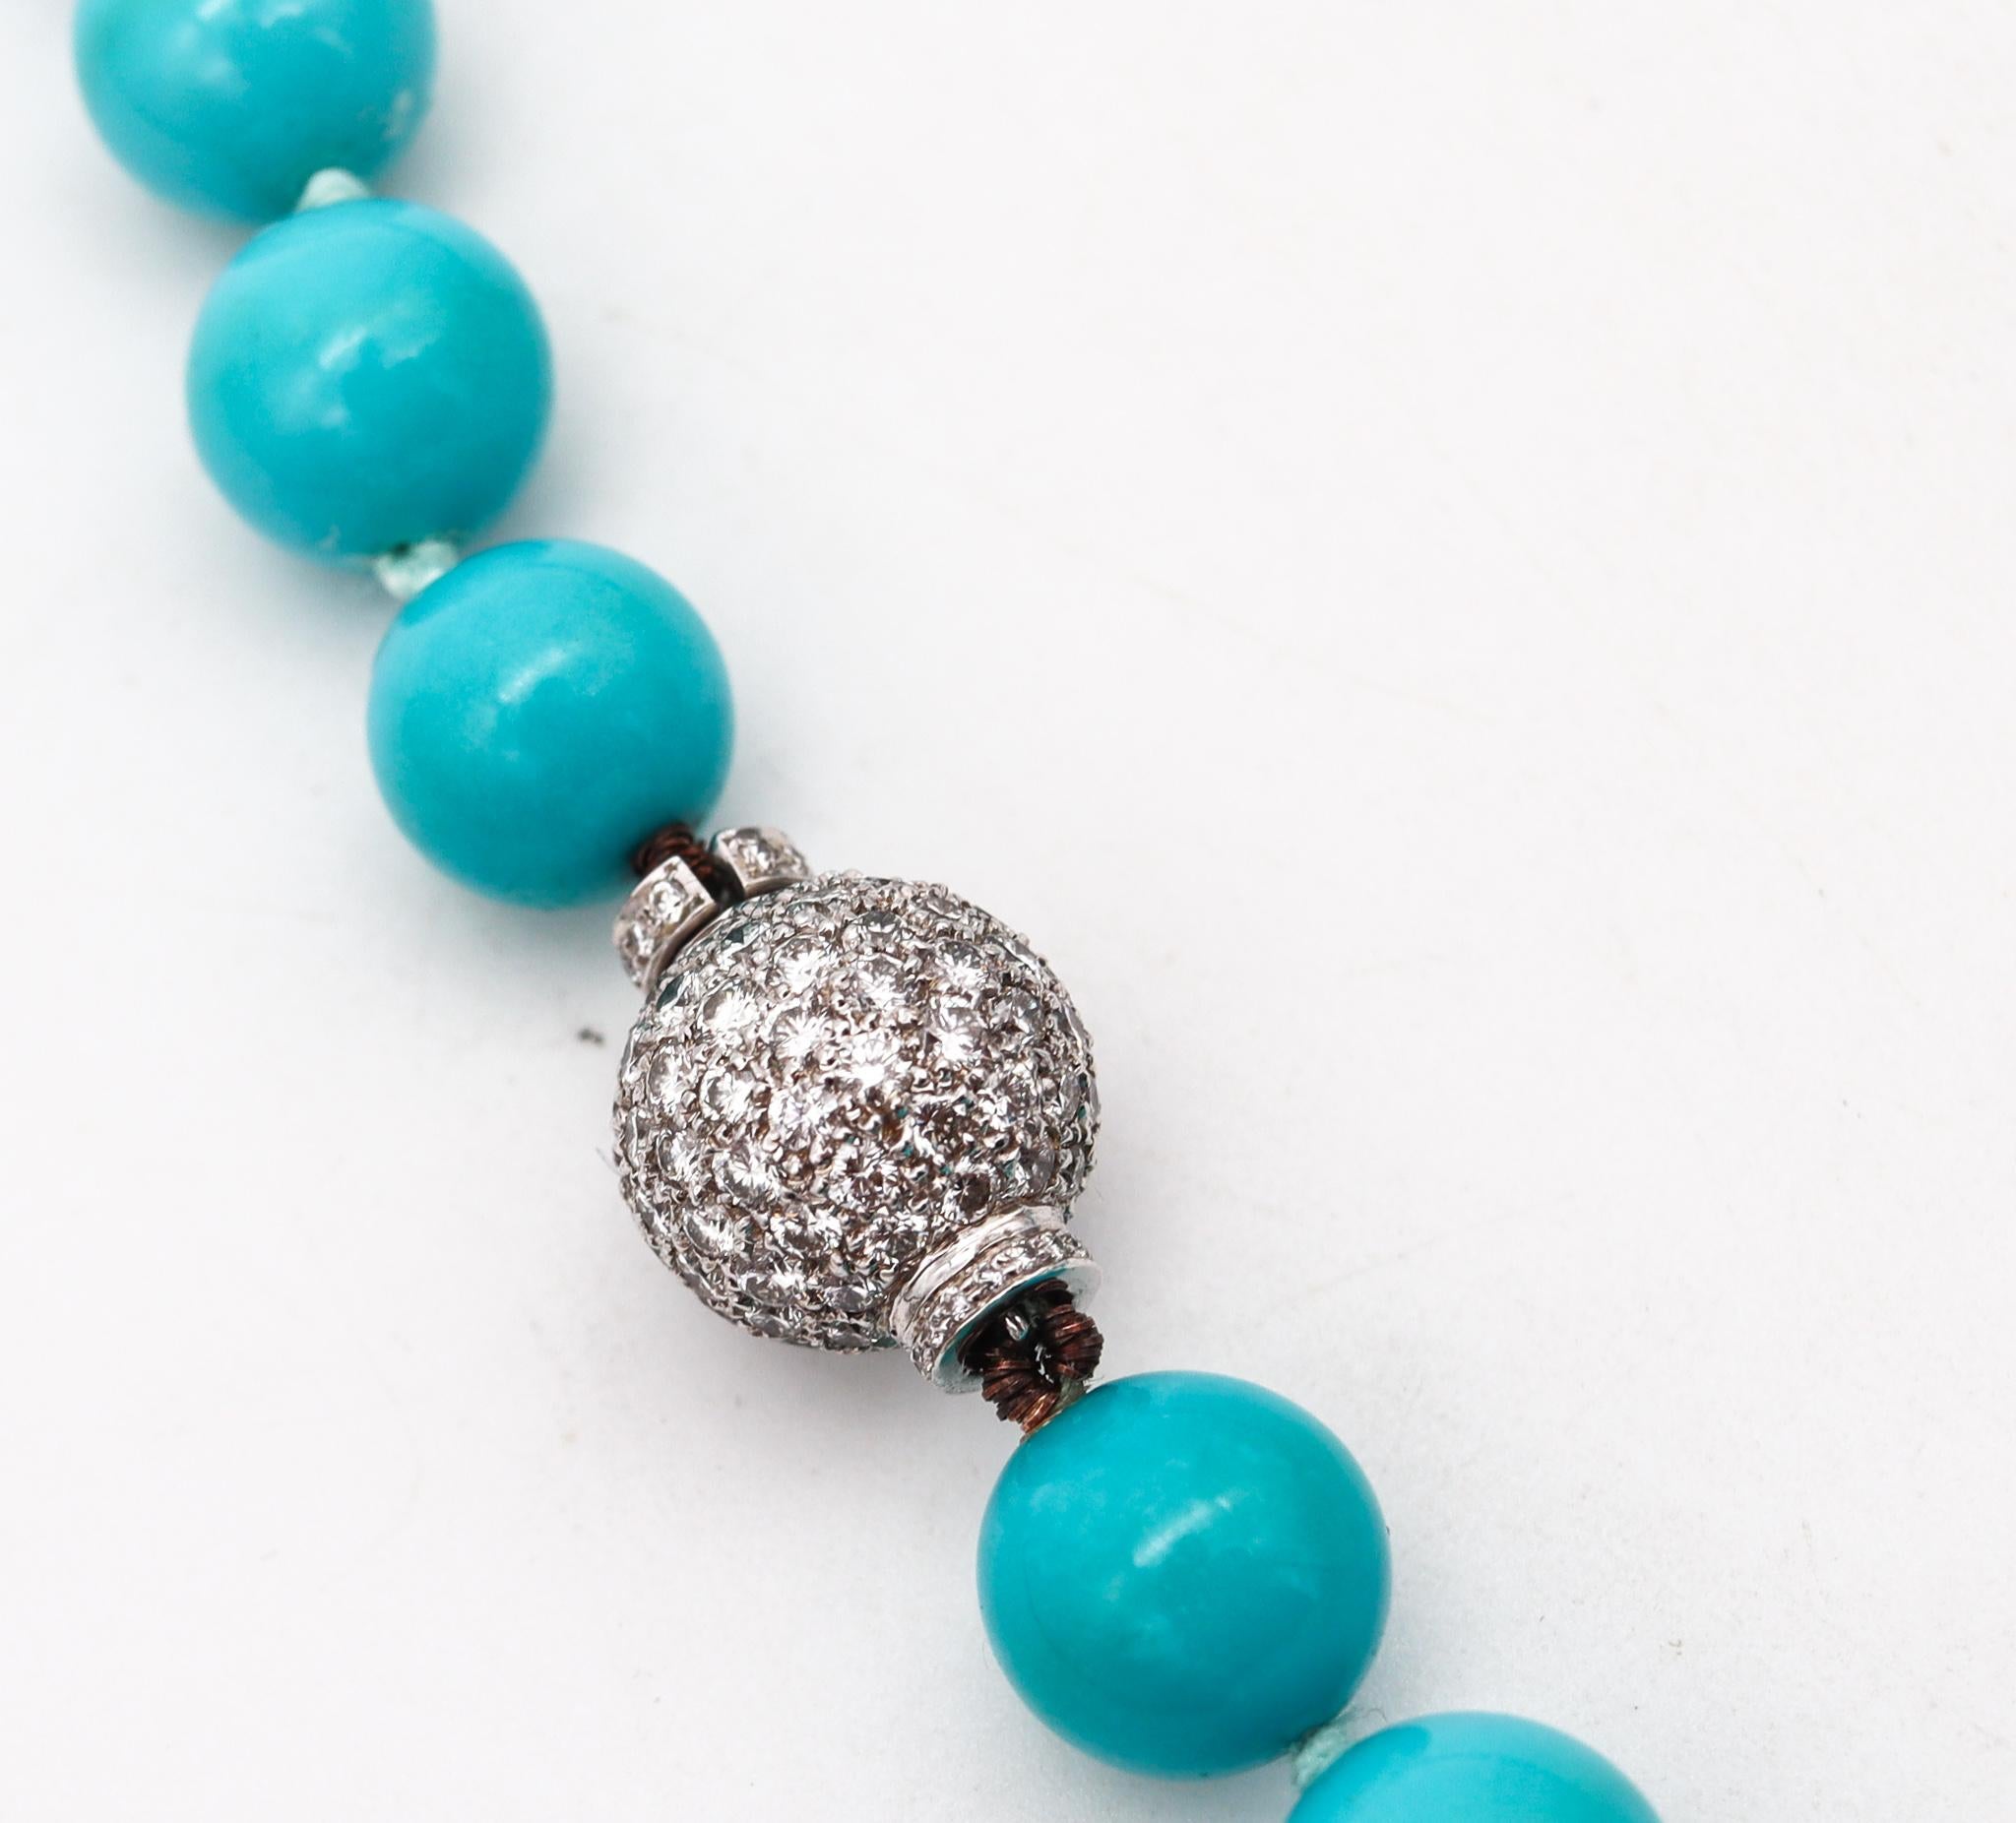 Eine blaue Türkis-Halskette für Dornröschen.

Wunderschönes und elegantes, zeitgenössisches Collier, bestehend aus 39 kalibrierten runden Perlen von 10 mm x 10 mm, geschnitzt aus natürlichen blauen Türkisen der seltenen Sorte Dornröschen.